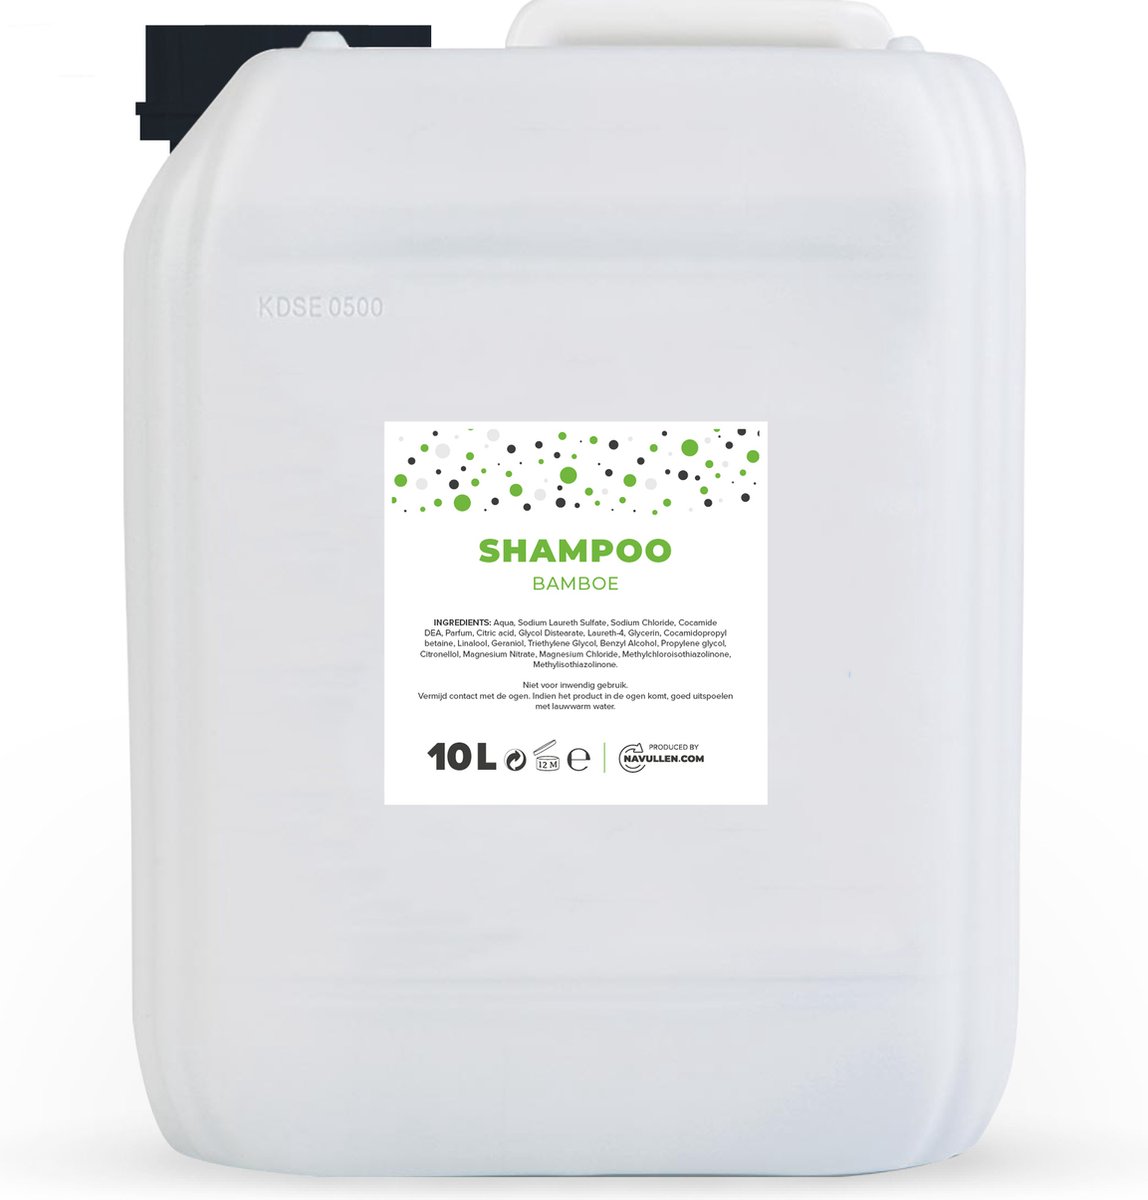 Shampoo - Bamboe - Parelmoer - 10 Liter - Jerrycan - Navulling - Navullen